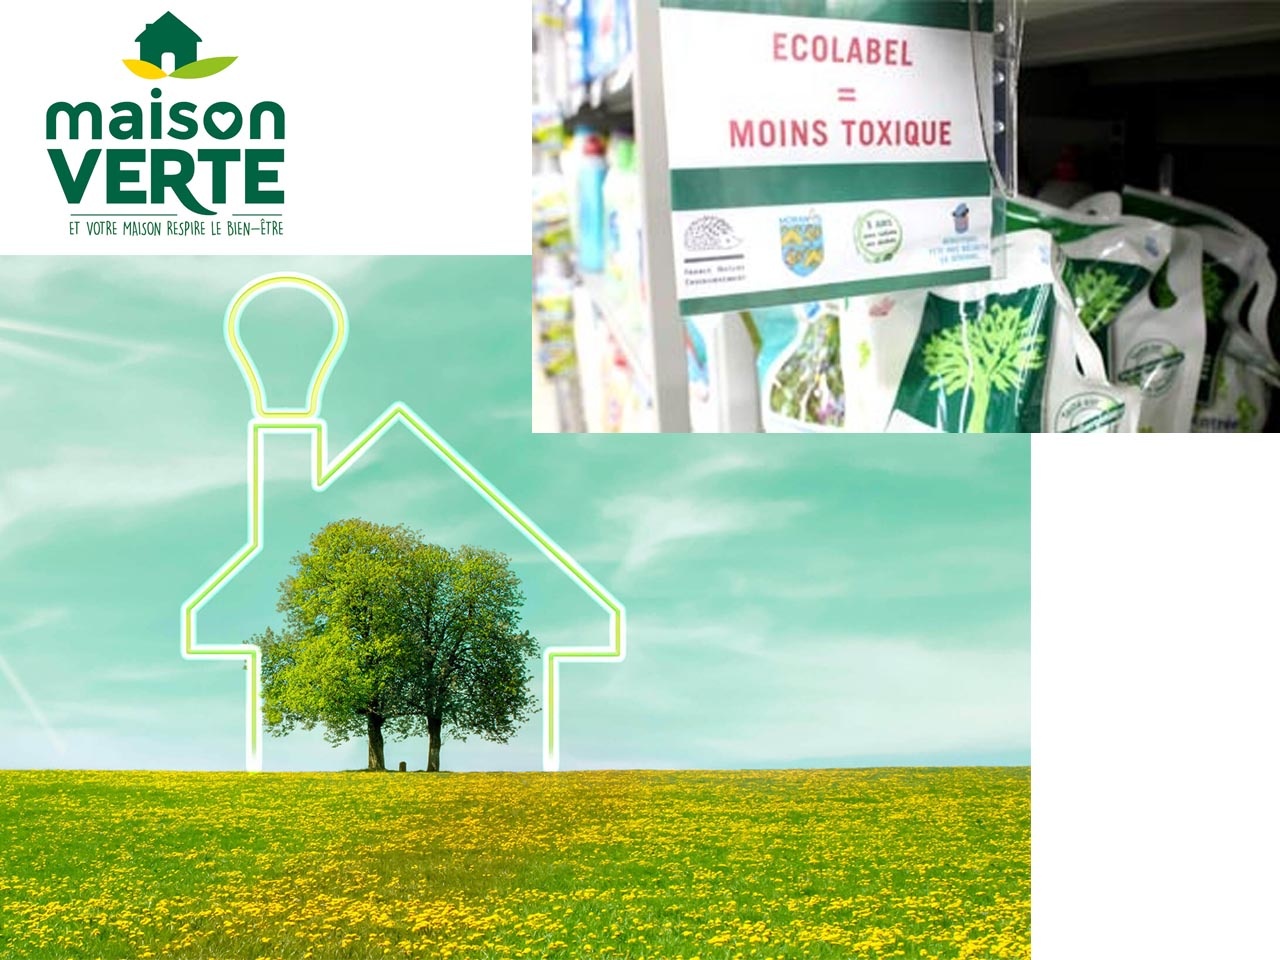 Observatoire Maison Verte : Produits éco-labellisés, les Français leur font-ils confiance ?